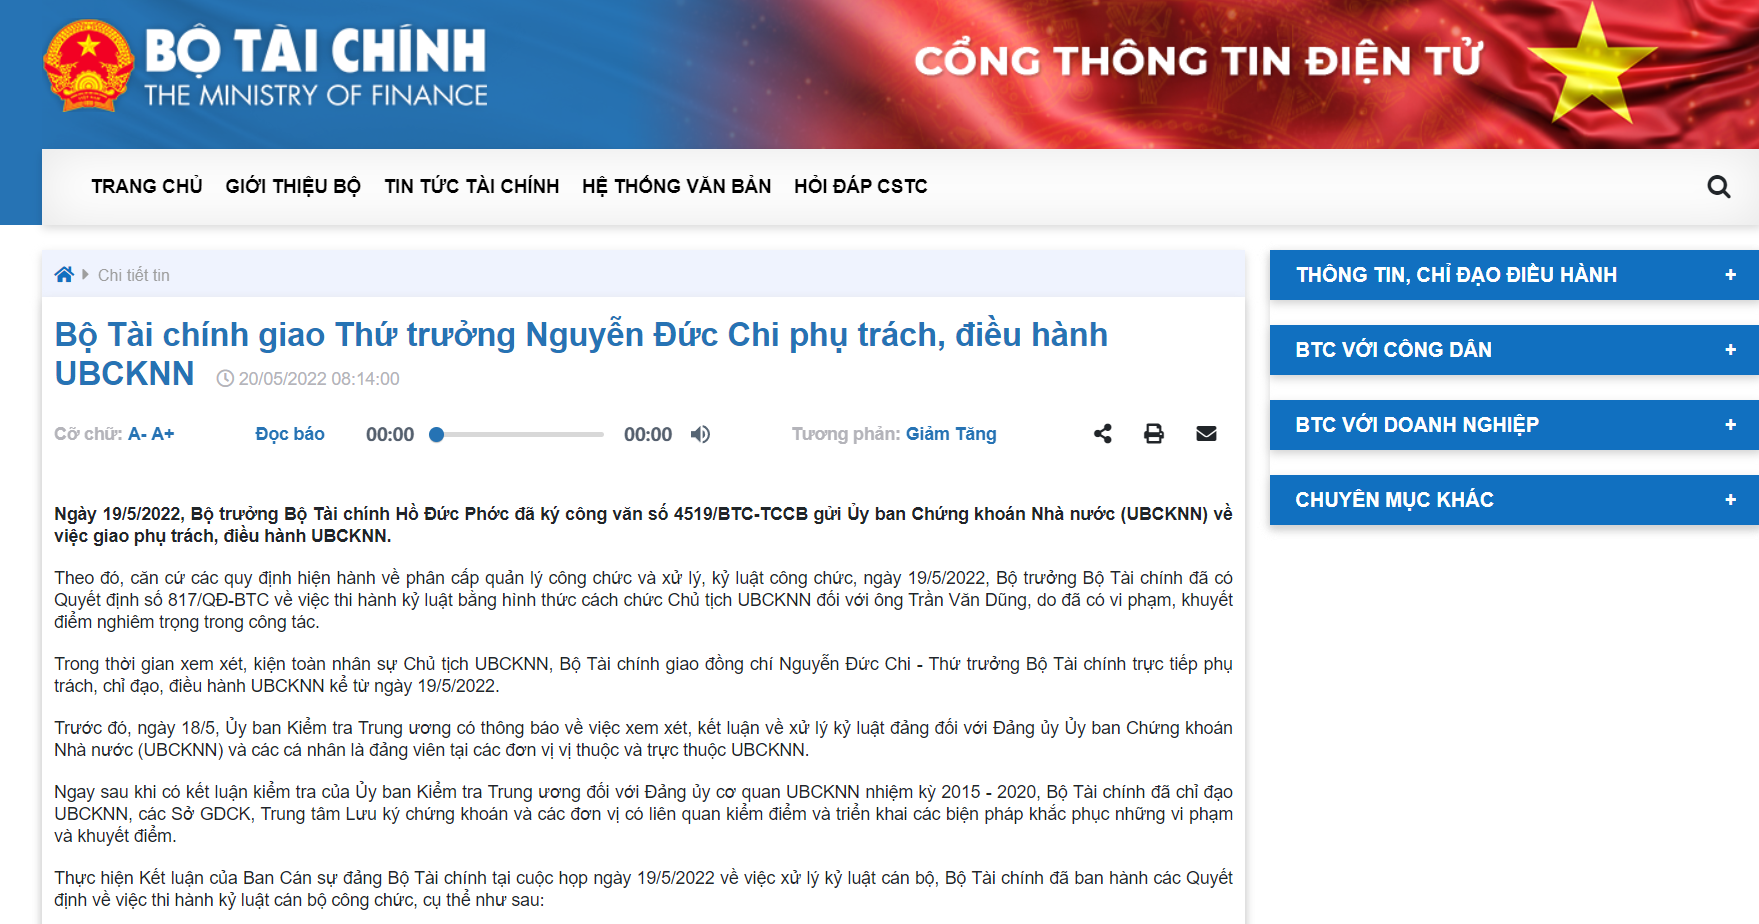 越南证券市场“大扫除”动静惊人 证监会主席、交易所总经理被问责